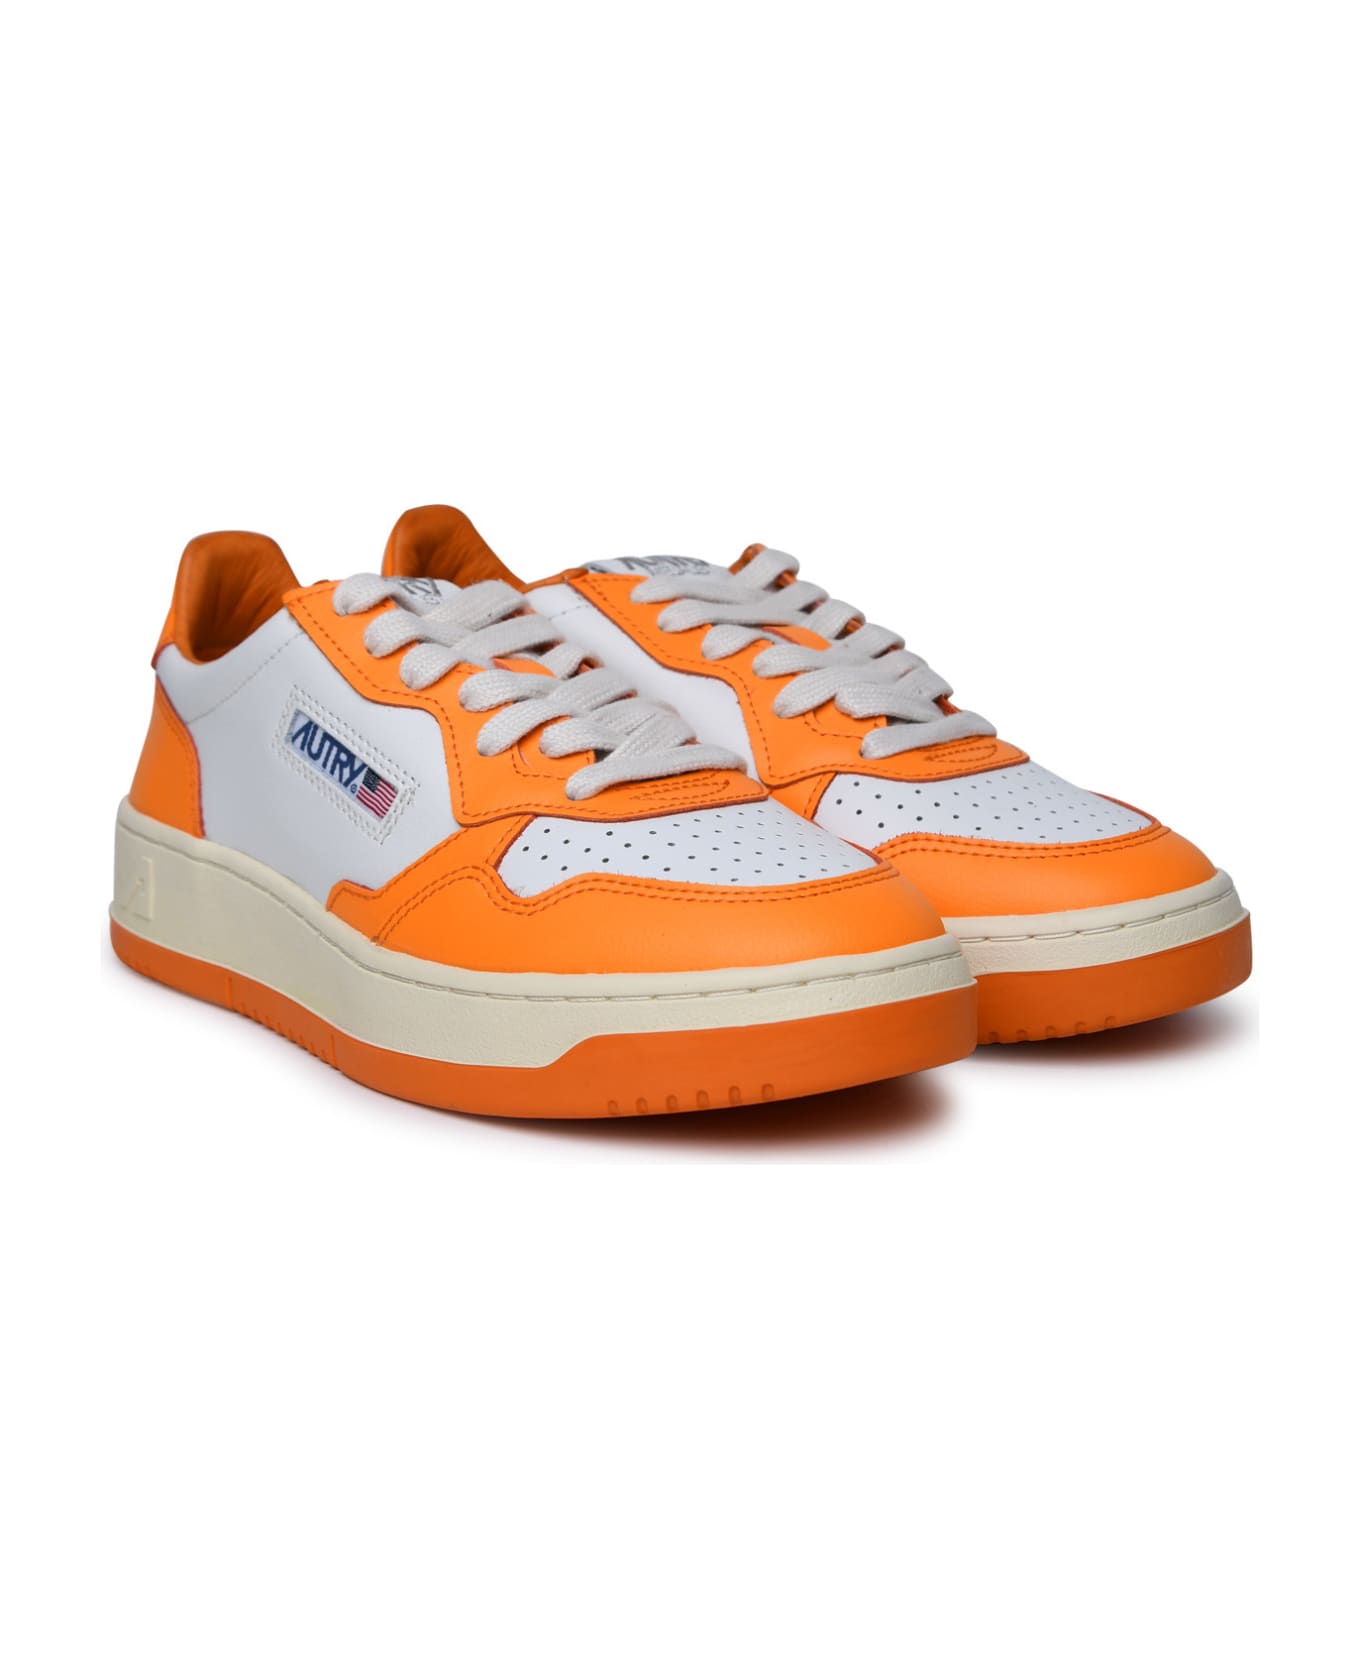 Autry 'medalist' Orange Leather Sneakers - White Orange ウェッジシューズ